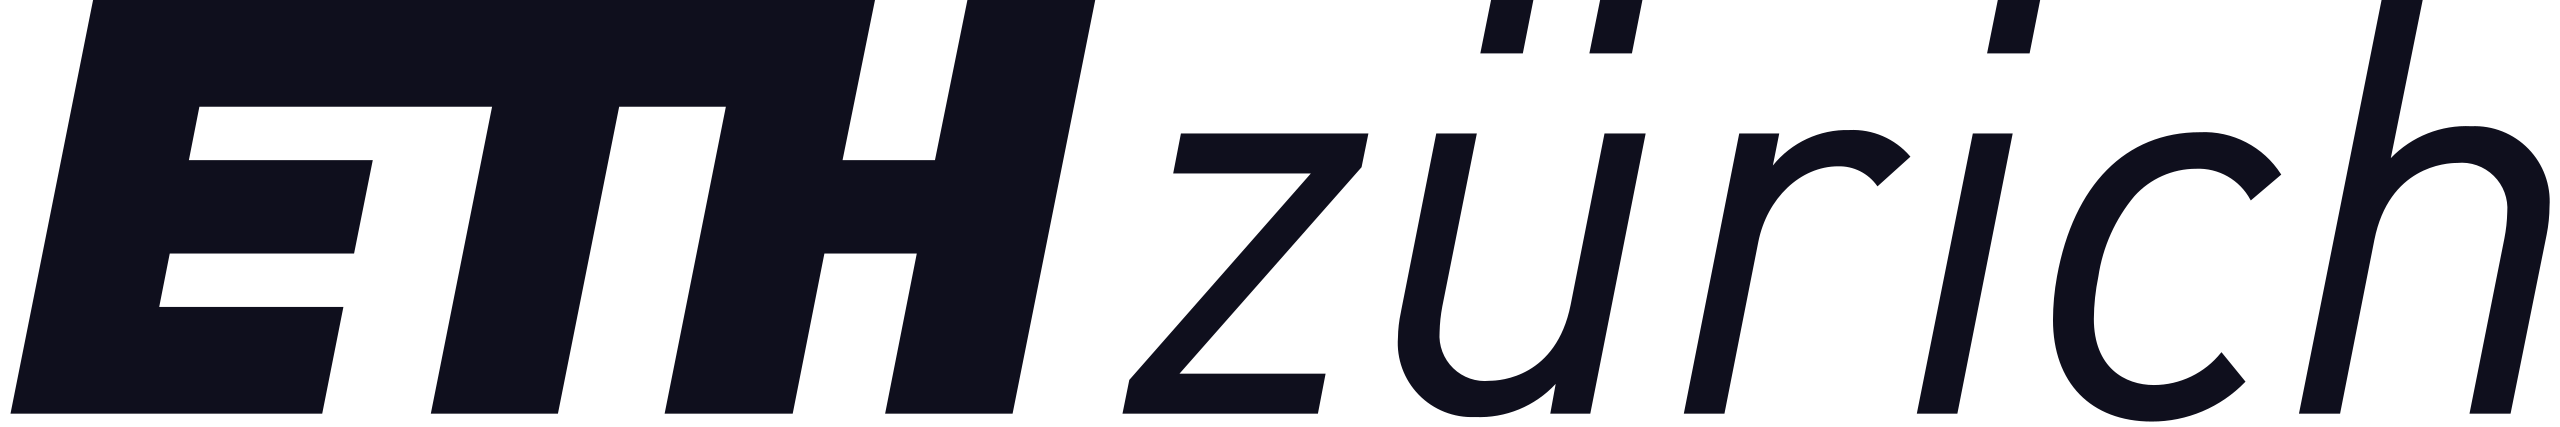 ETH Zurich logo